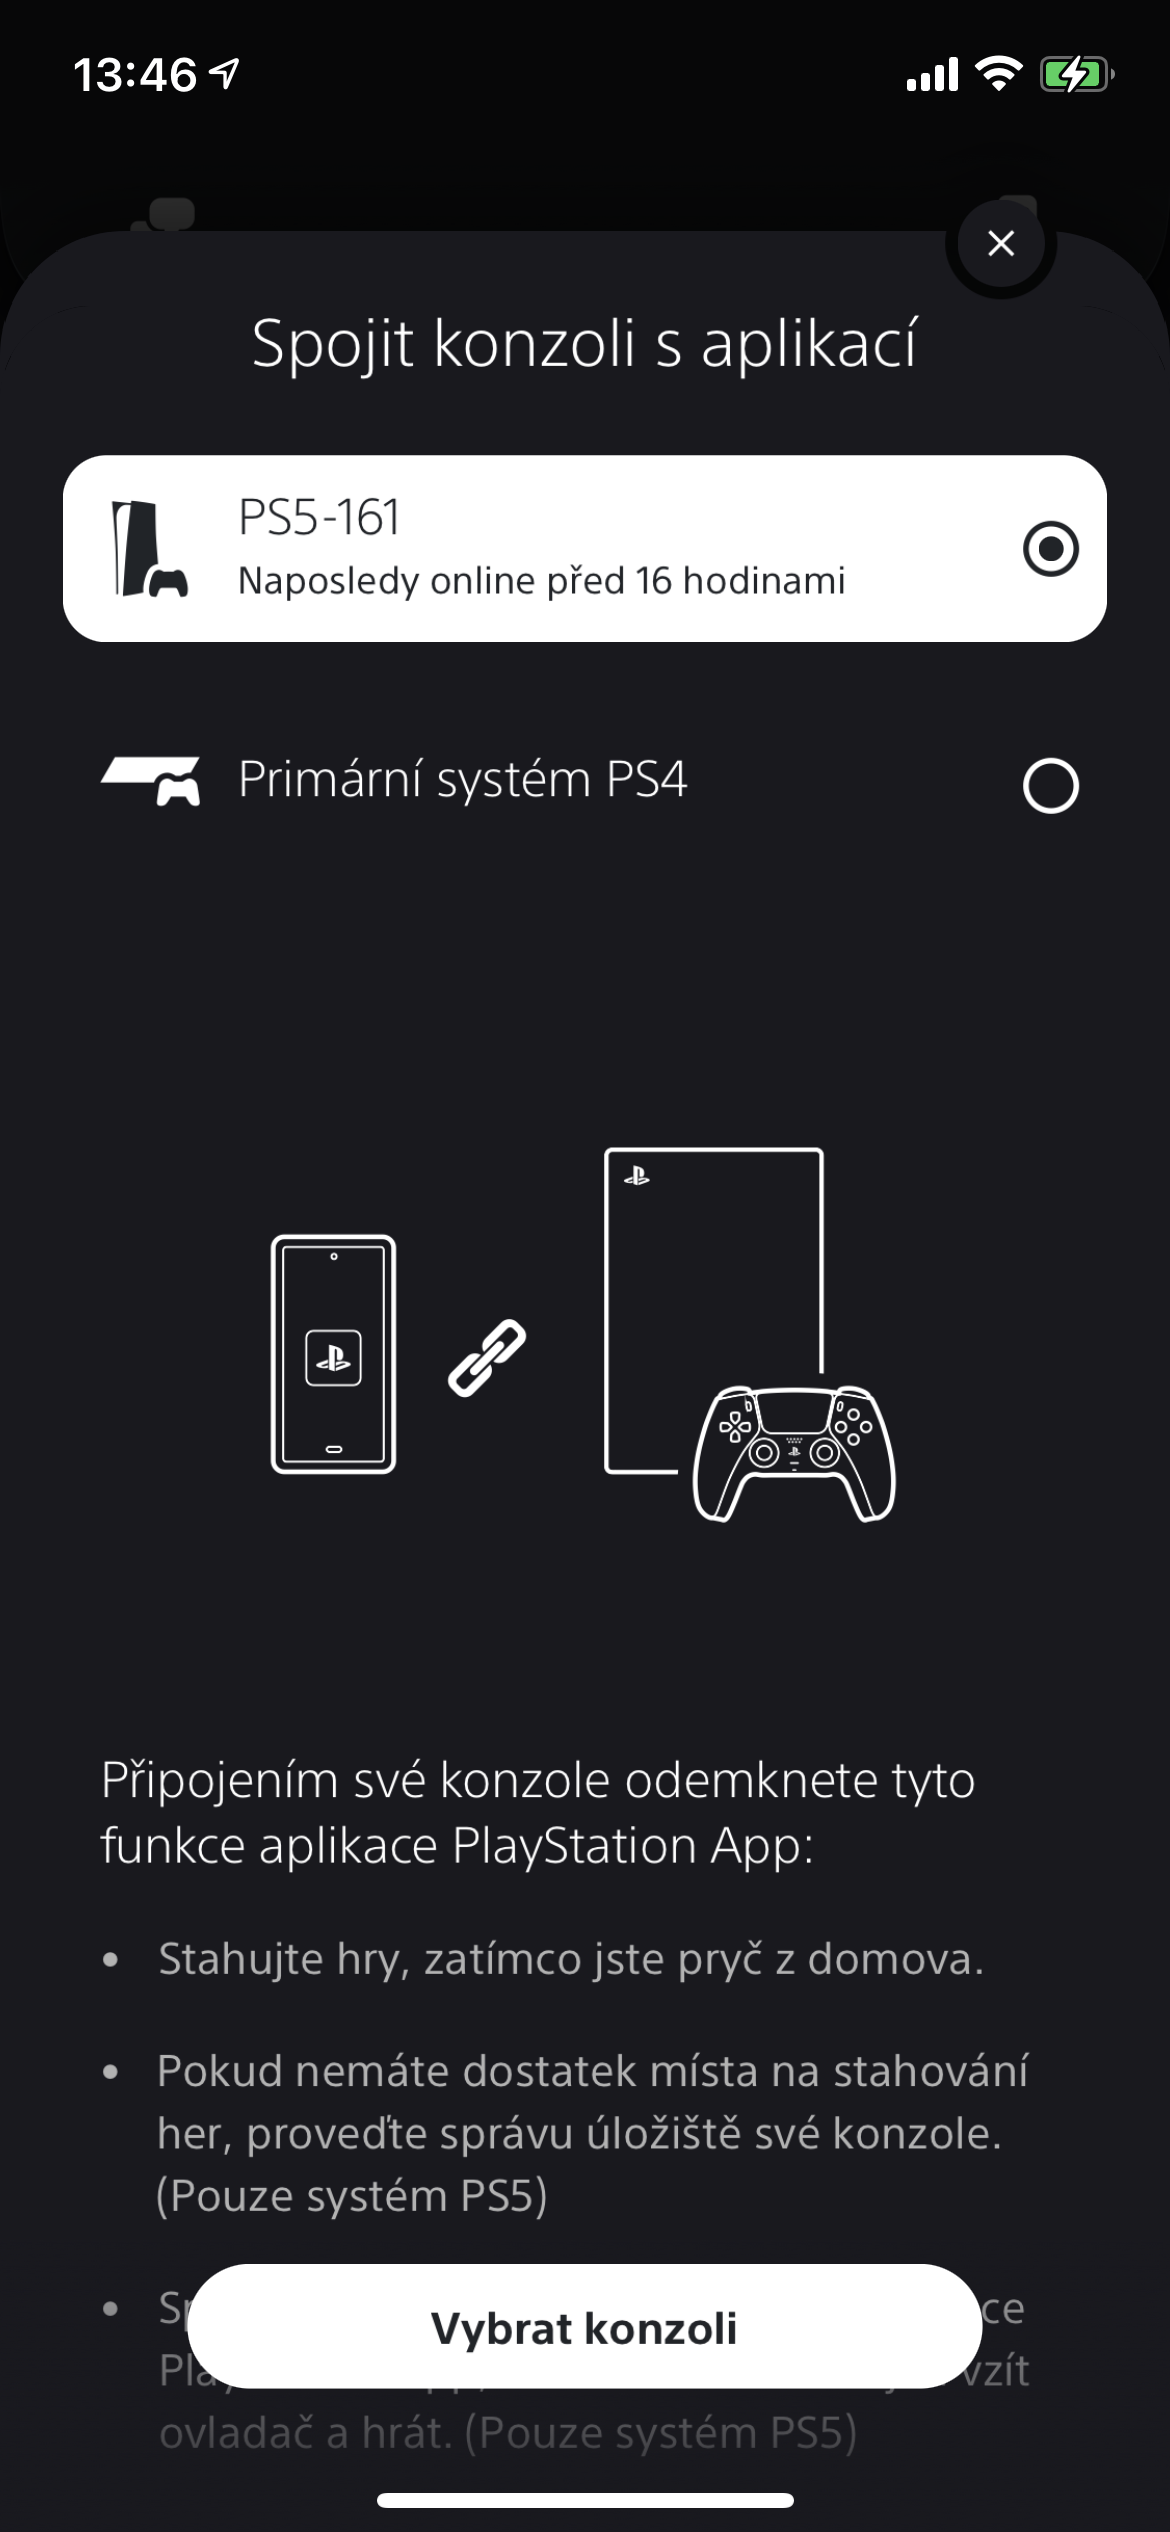 Jak spojit PS5 s aplikací?